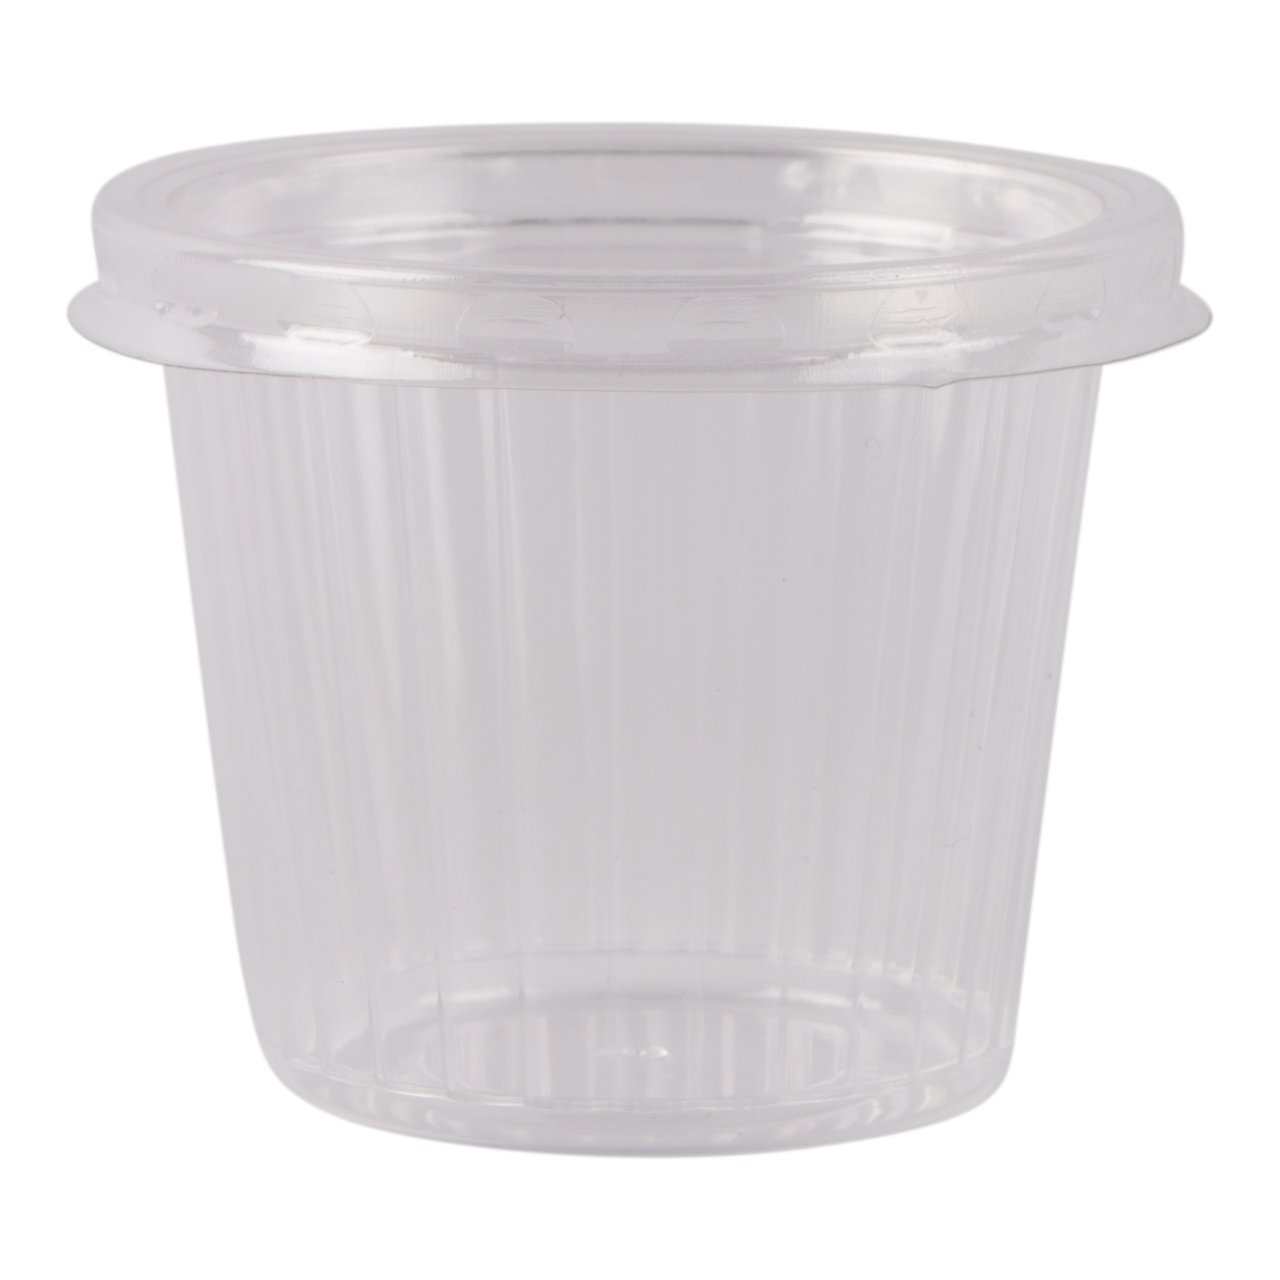 Cup met ribbel plus deksel, glashelder 125 ml